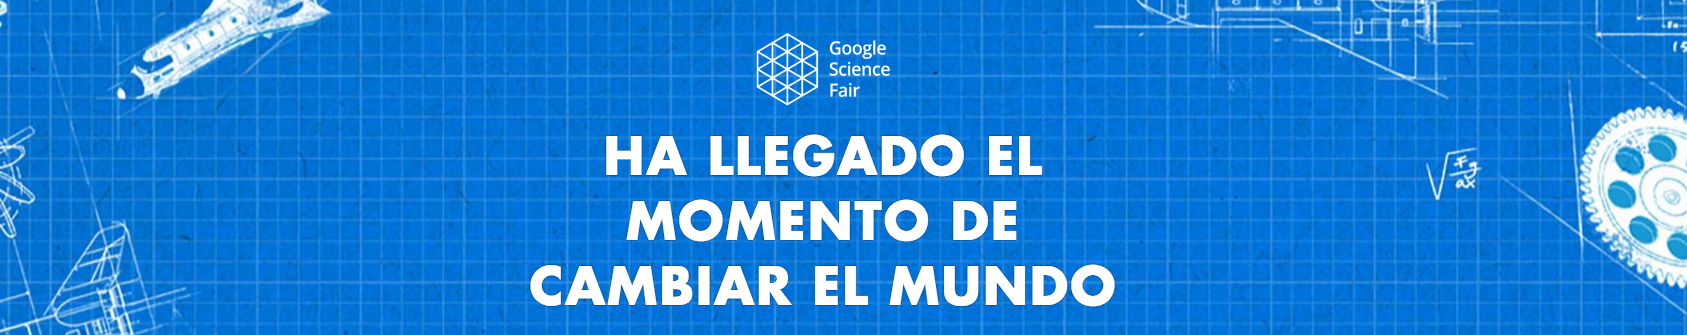 Google Science Fair es un concurso internacional de proyectos científicos para jóvenes de 13 ya18 años